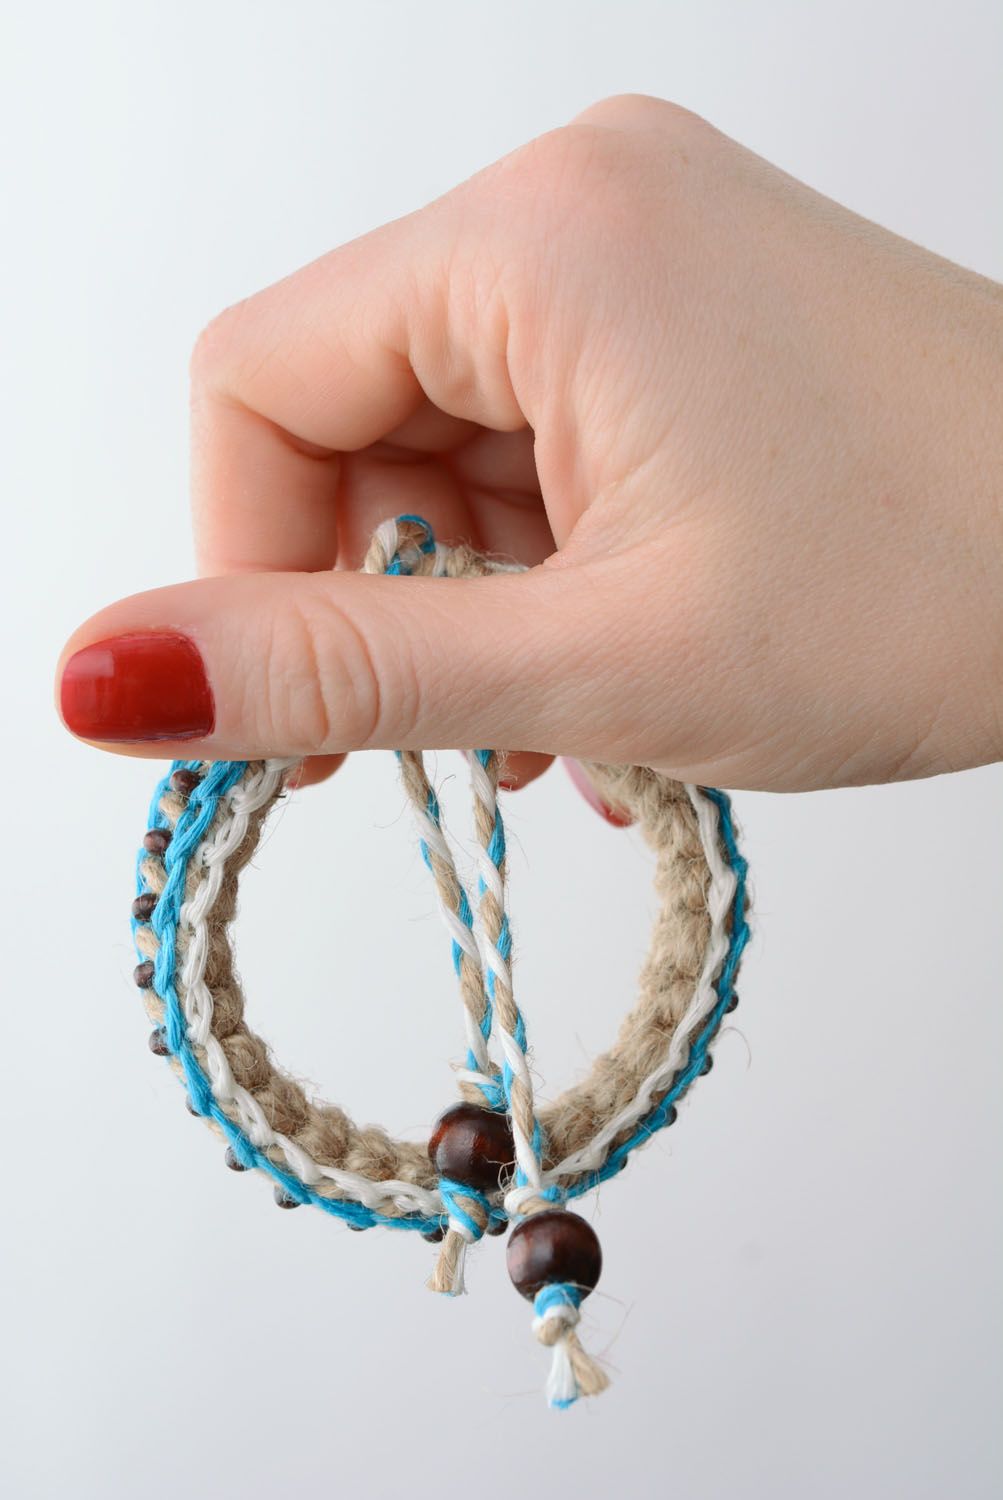 Плетеный браслет в эко-стиле фото 5